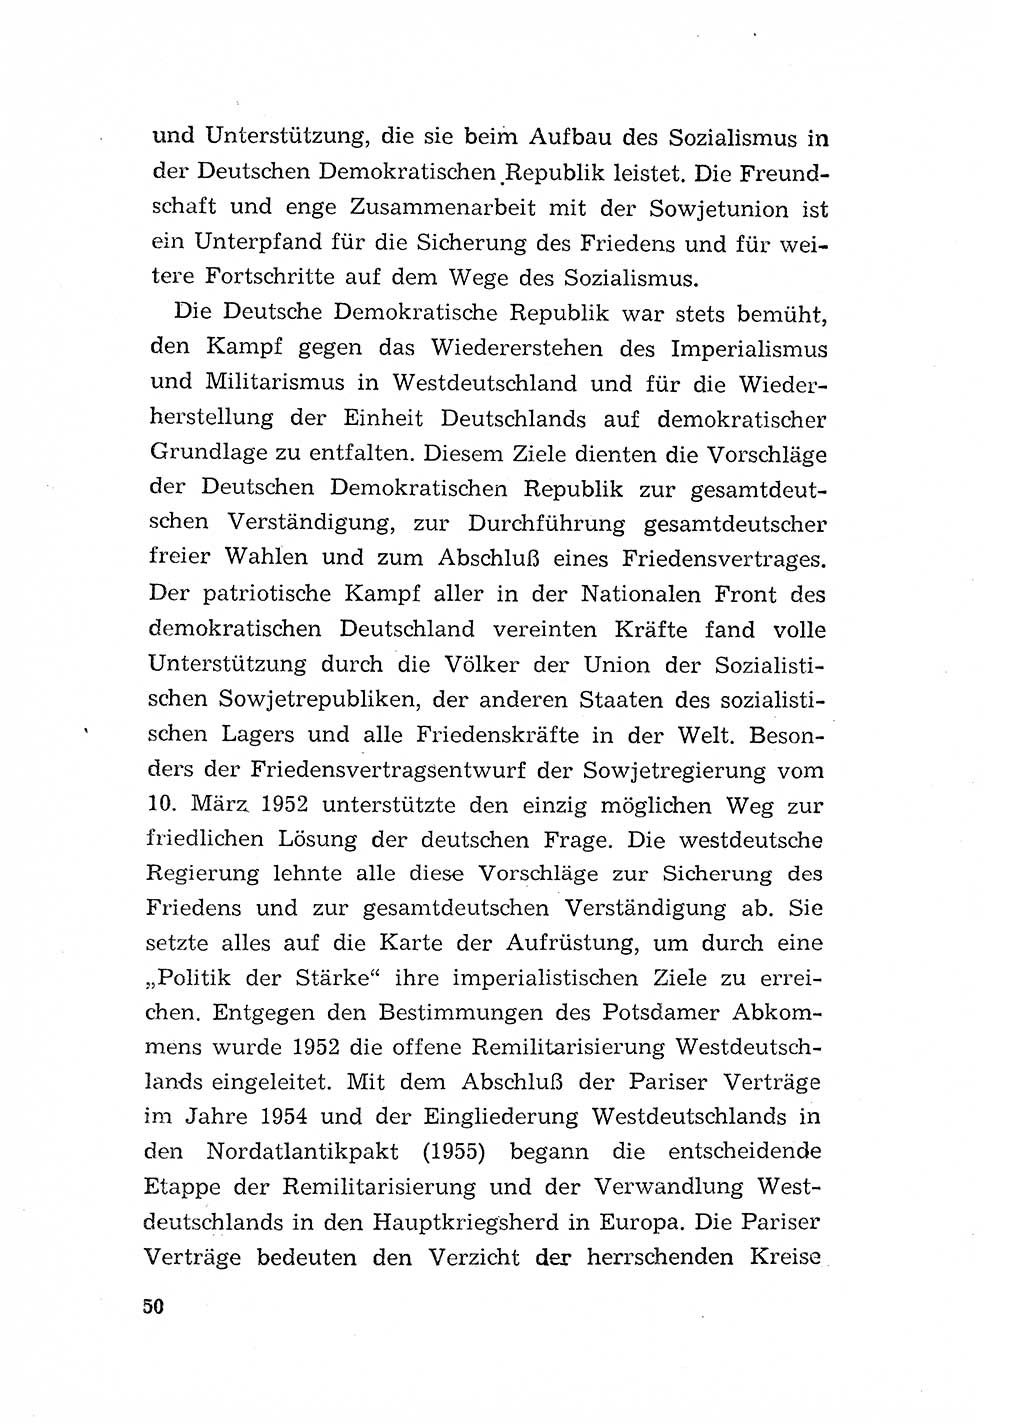 Programm der Sozialistischen Einheitspartei Deutschlands (SED) [Deutsche Demokratische Republik (DDR)] 1963, Seite 50 (Progr. SED DDR 1963, S. 50)